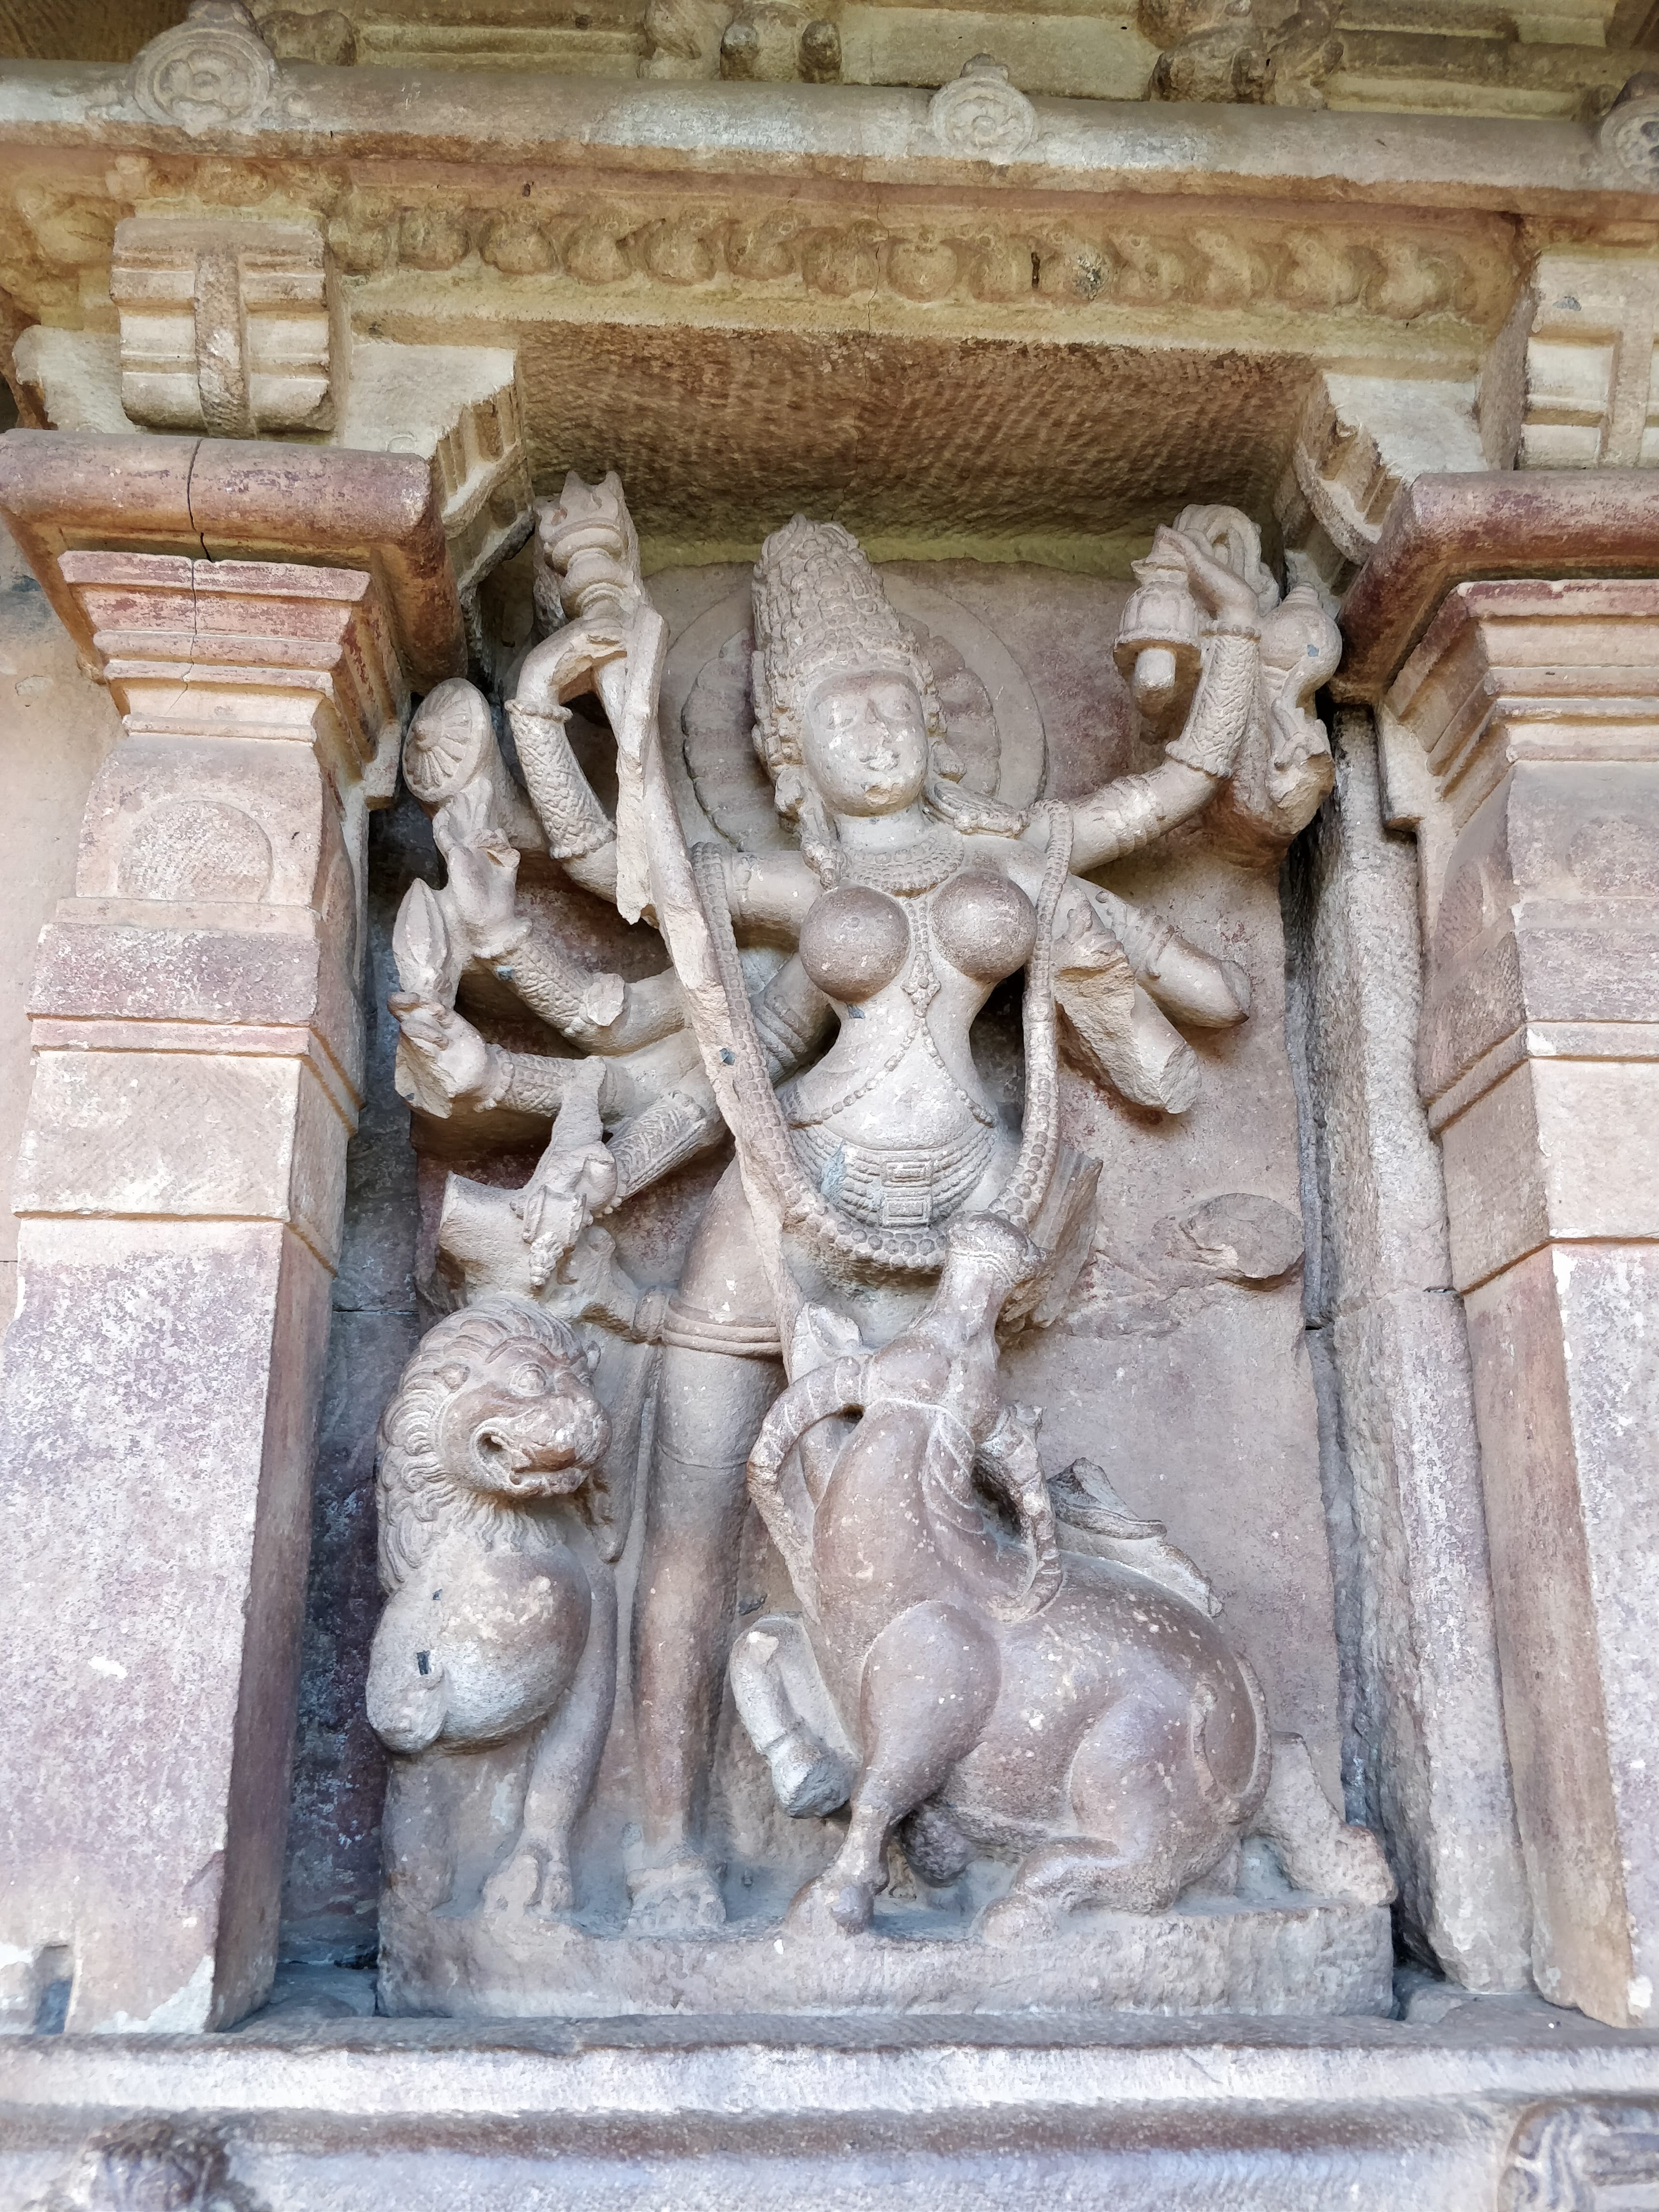 Sculpture in Durga temple